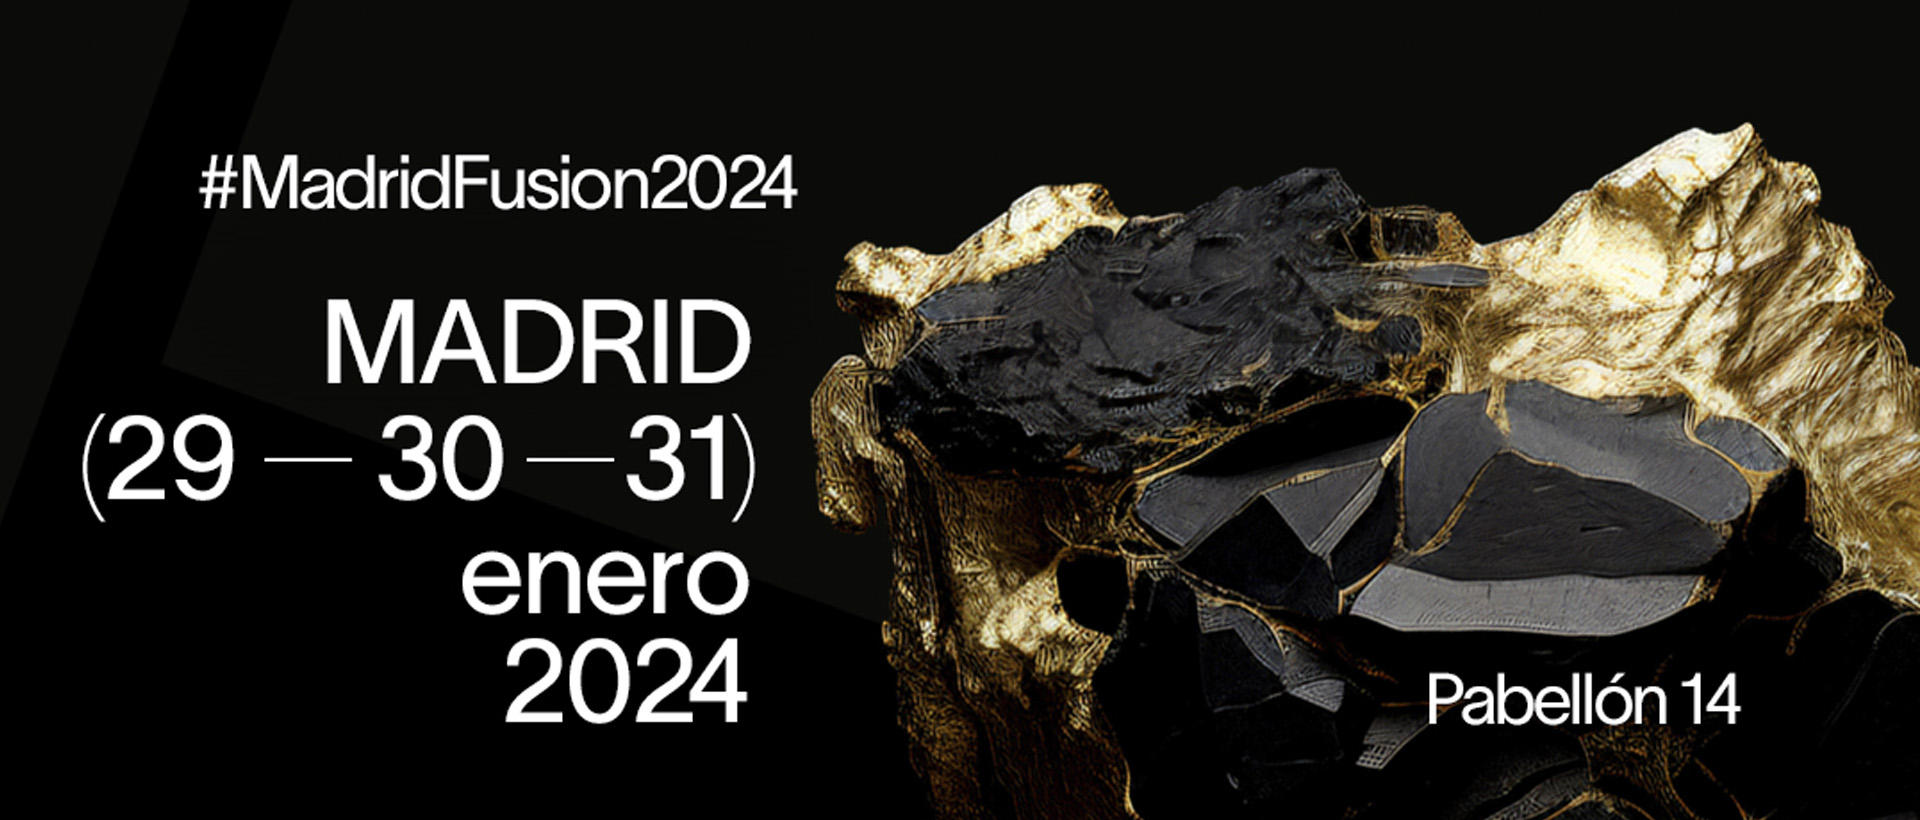 Nos sumamos a Madrid Fusión 2024 ¡Una experiencia gastronómica!